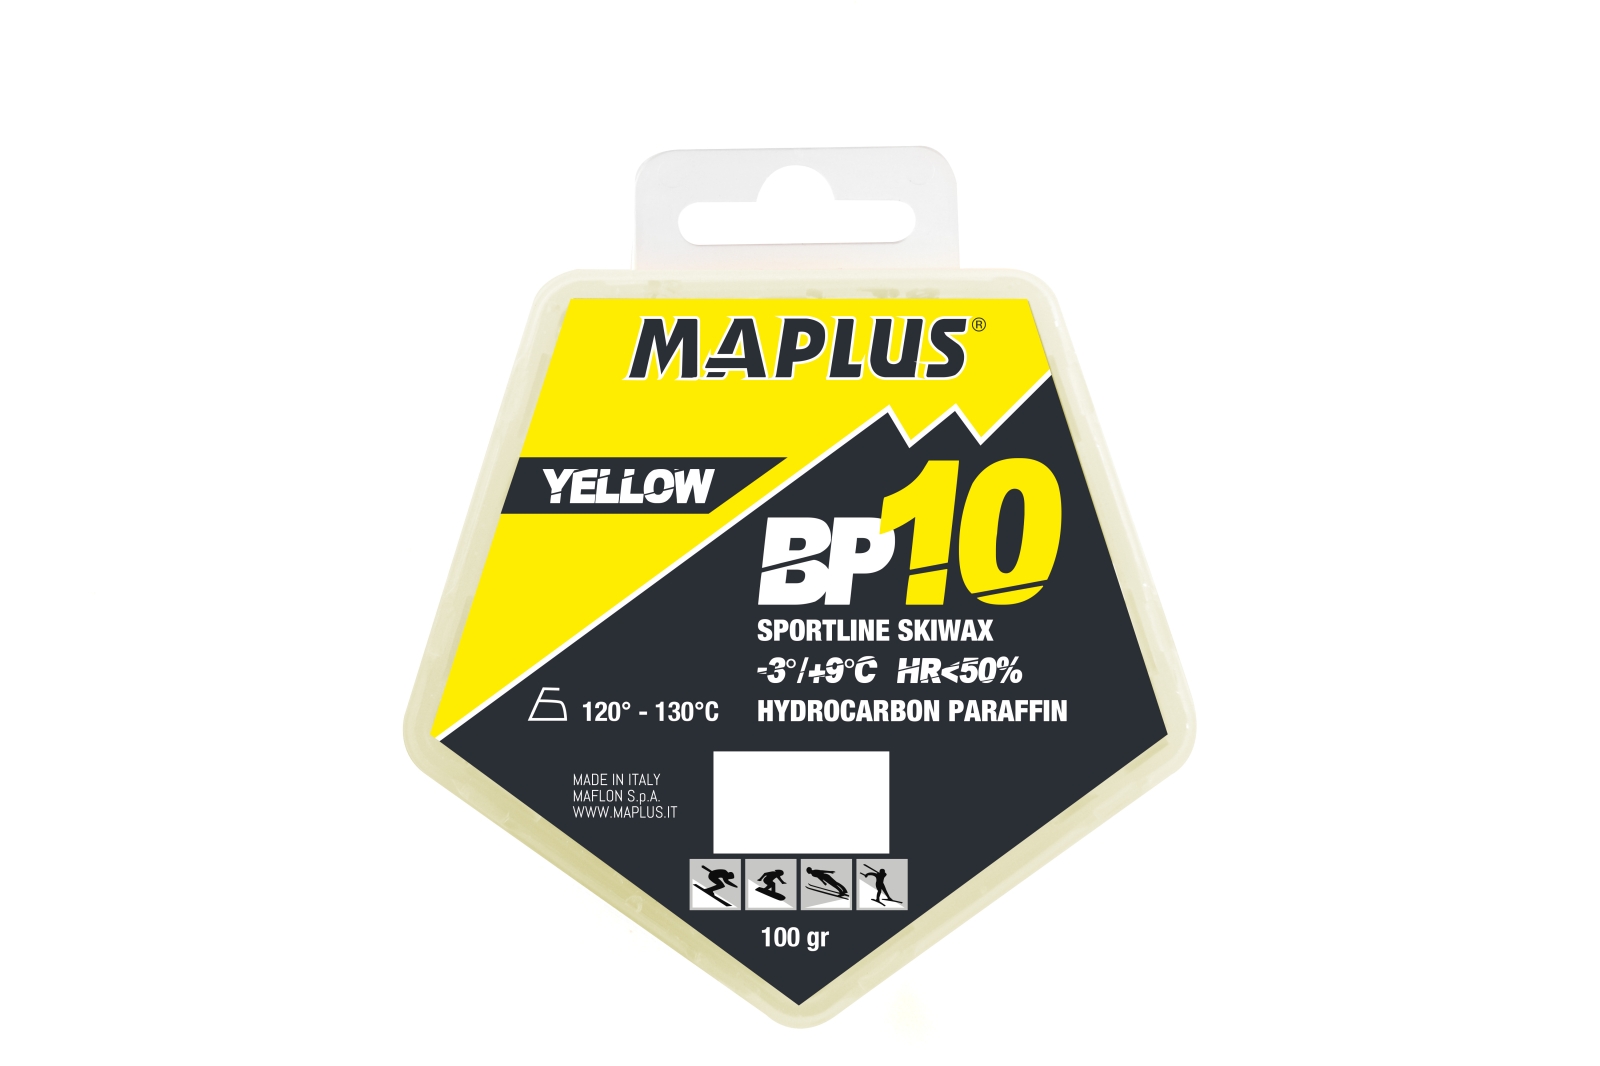  MAPLUS Fart BP10 Yellow en 125gr